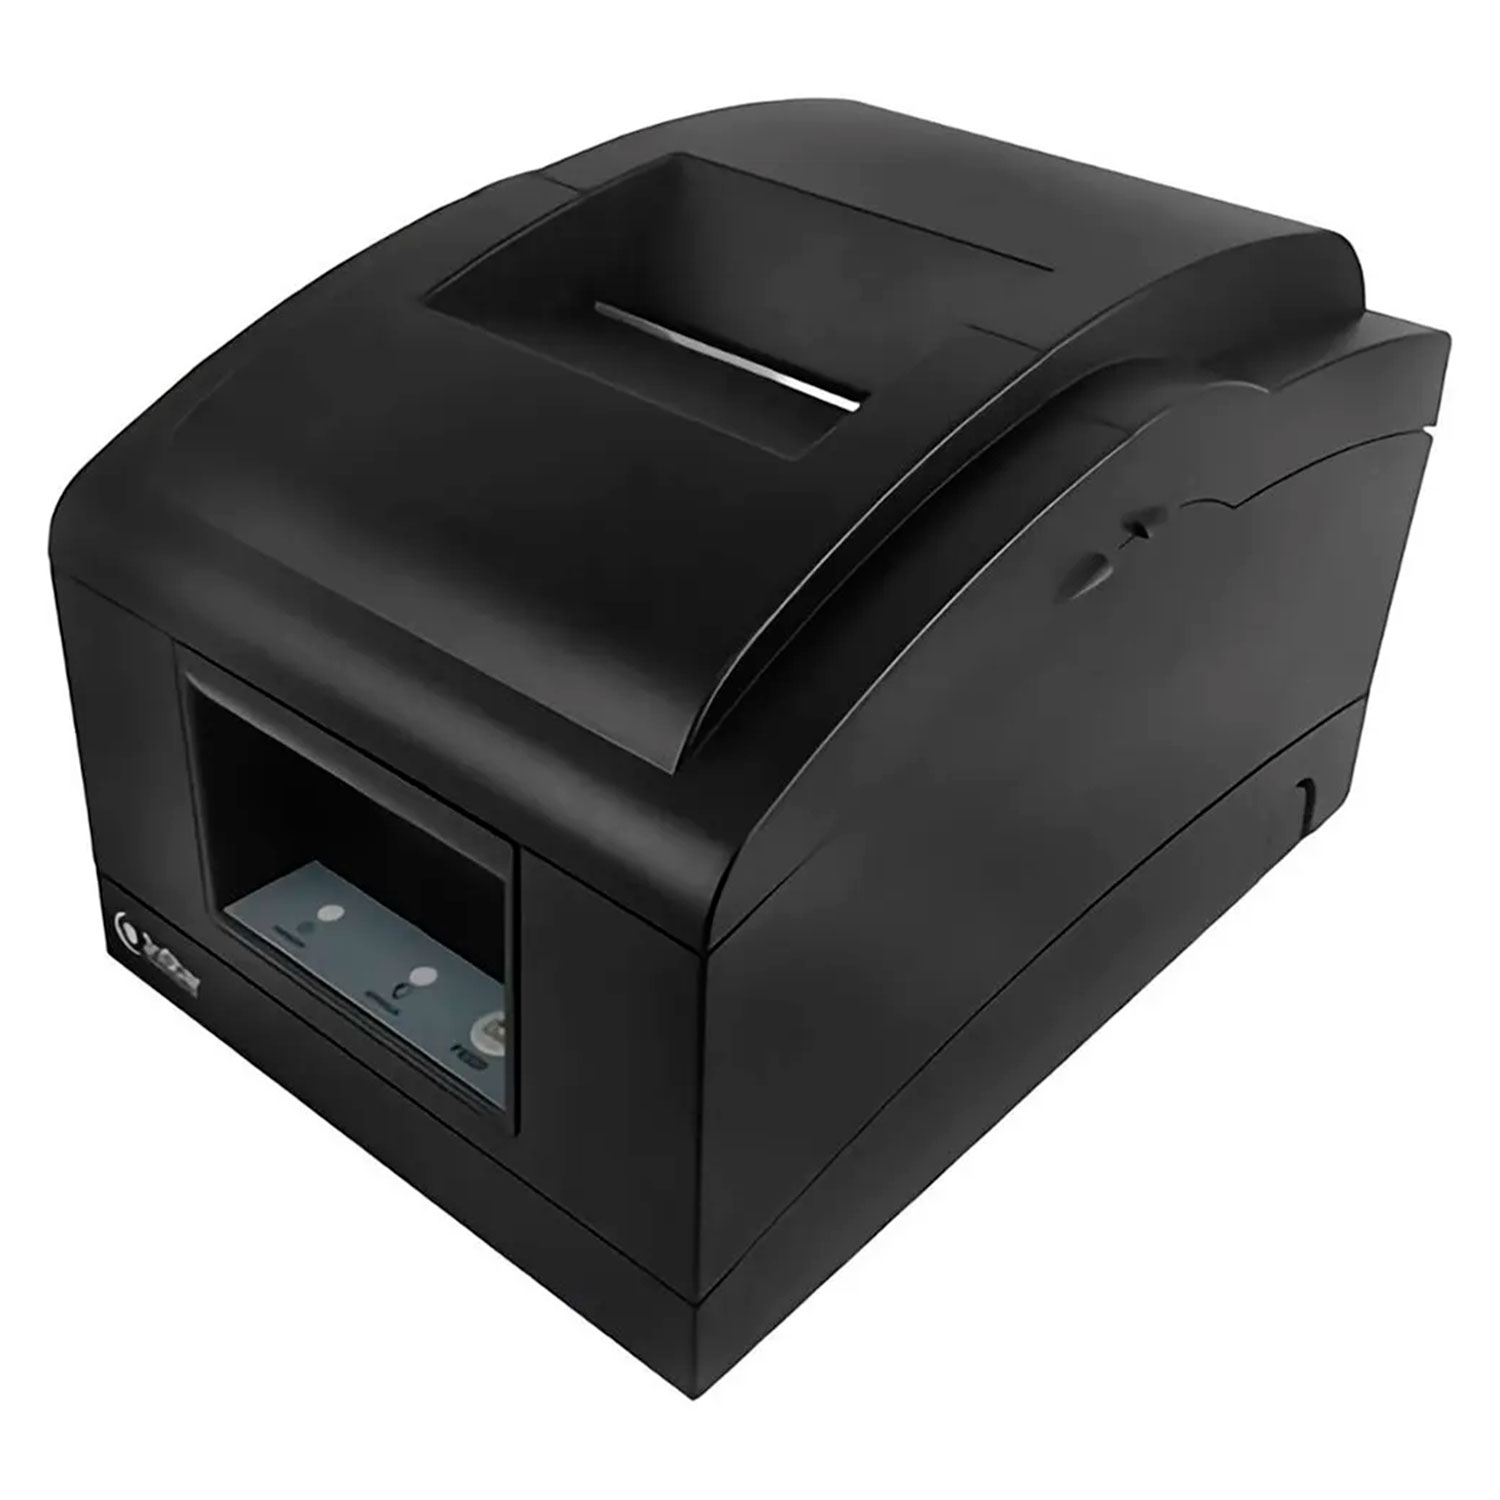 Impressora Matricial 3nStar RPI007 Bivolt - Preto